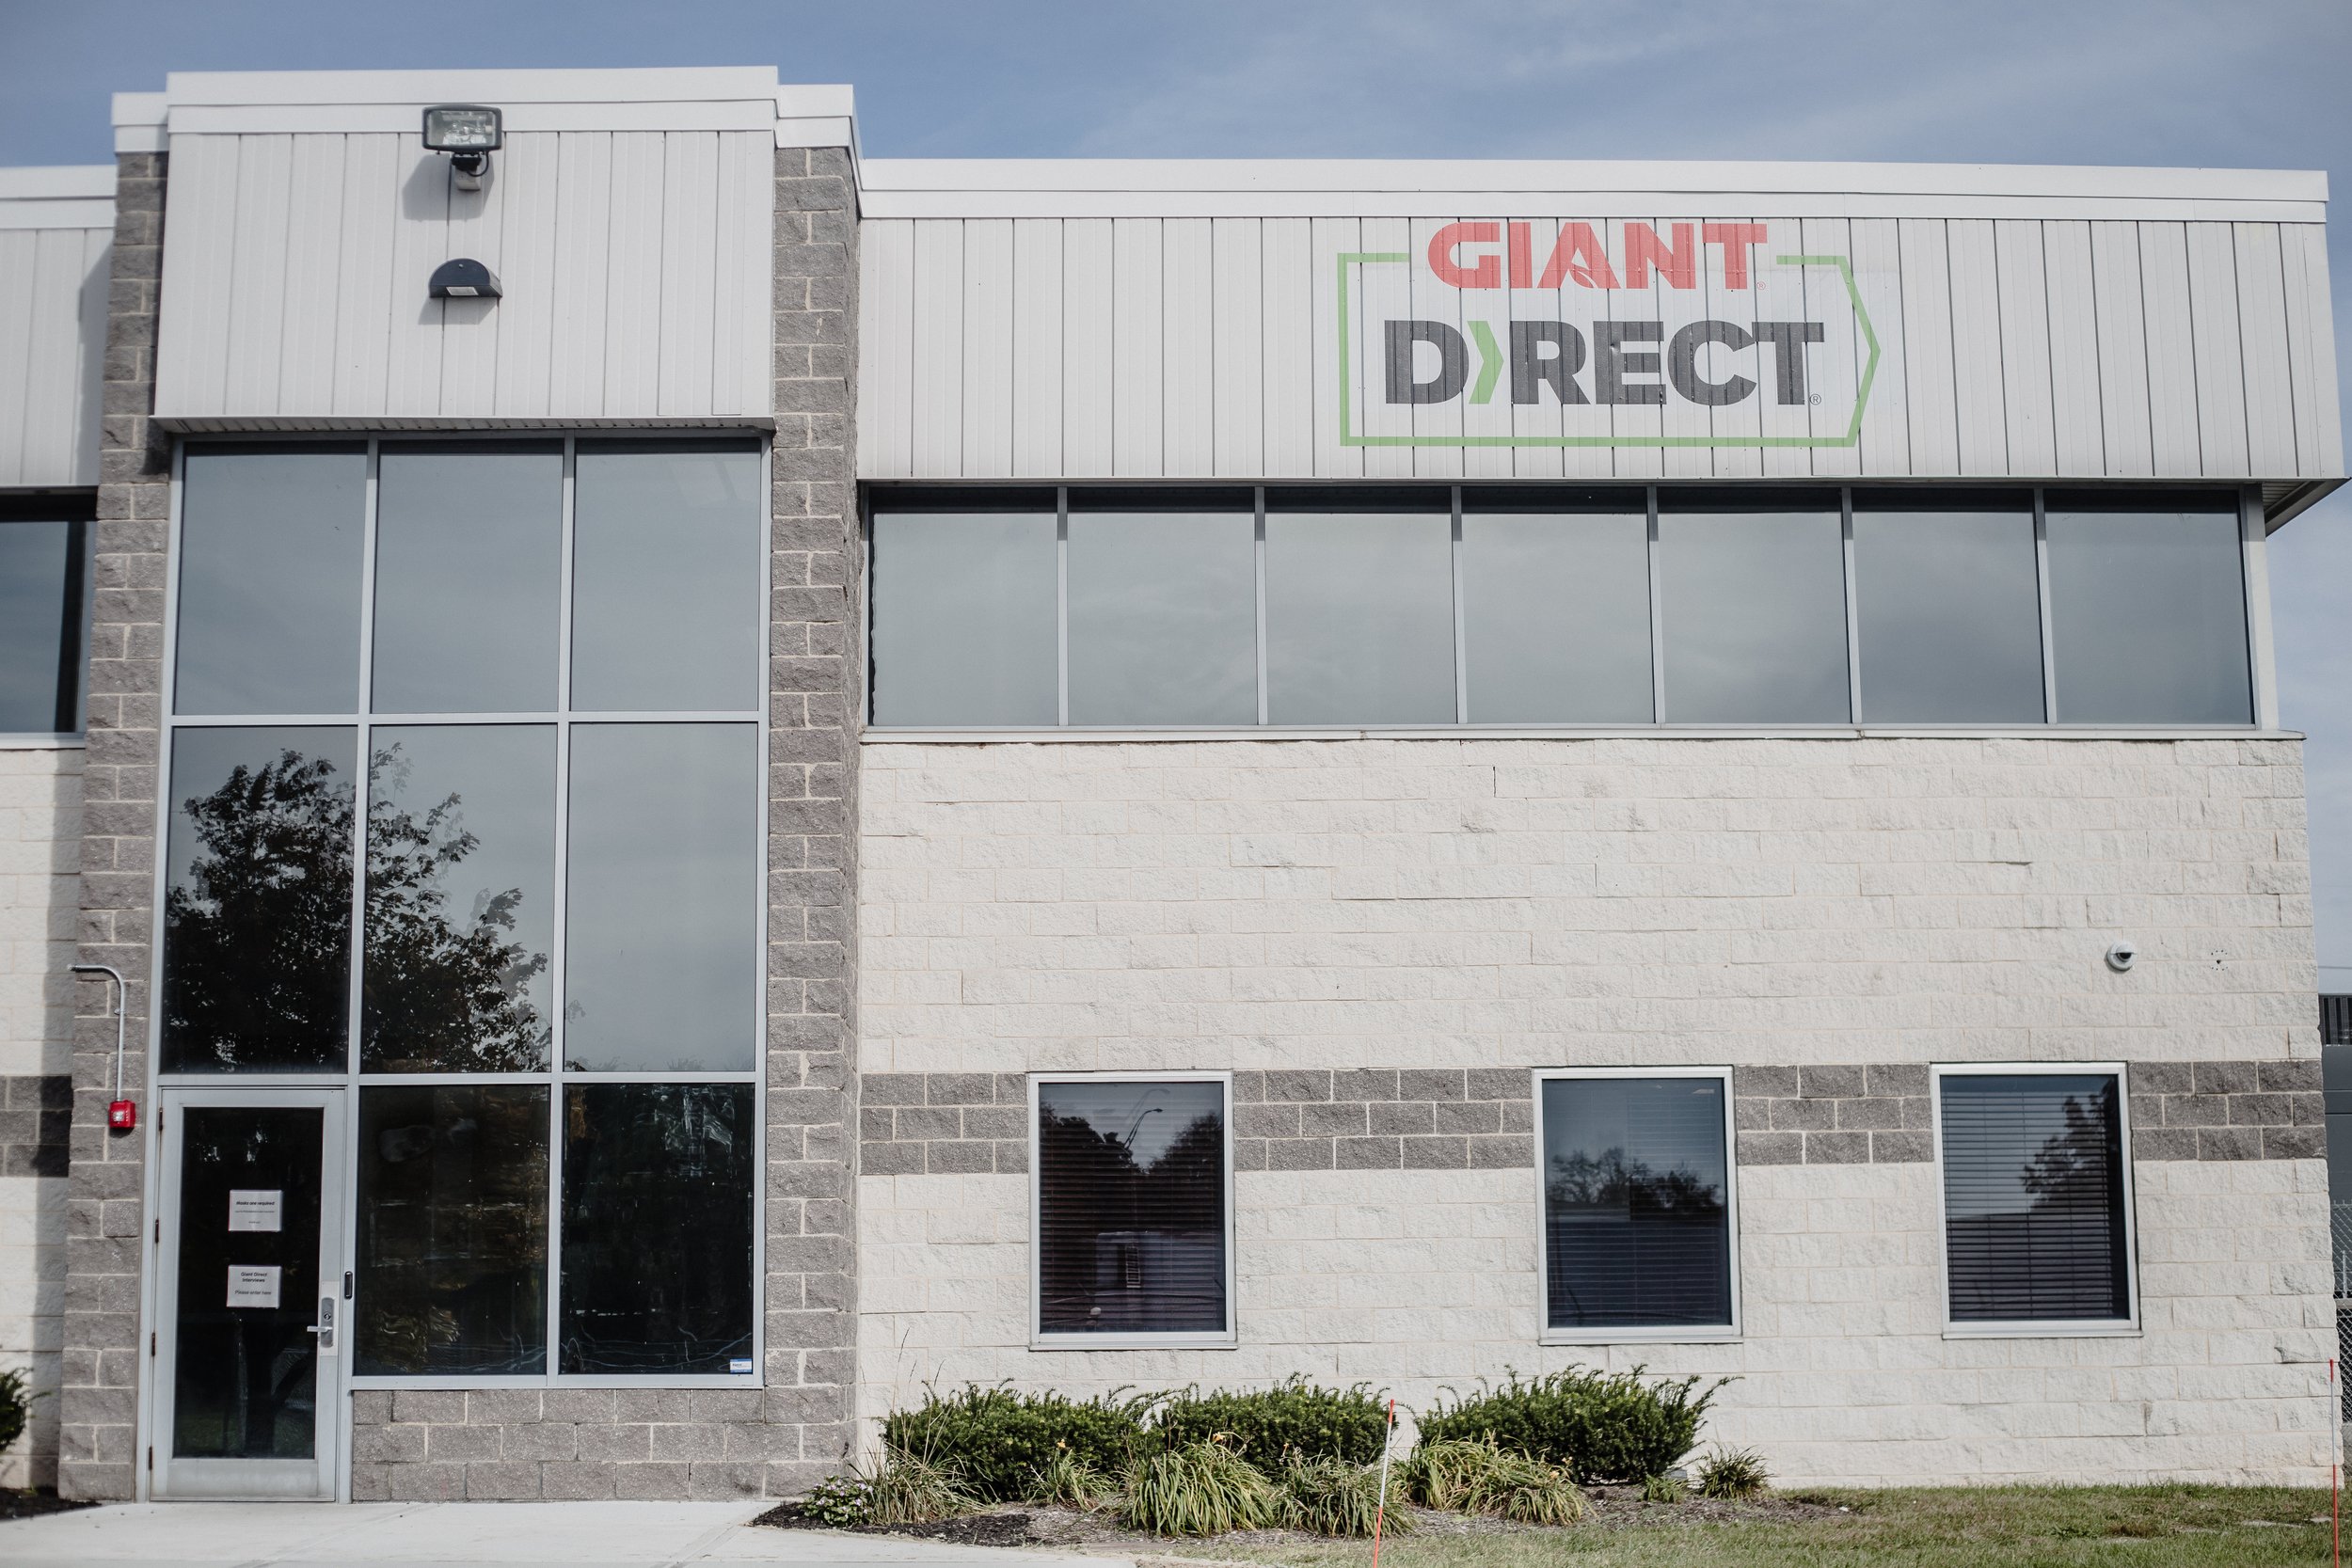 GIANT Direct E-commerce Fulfillment Center Exterior Entrance.jpg